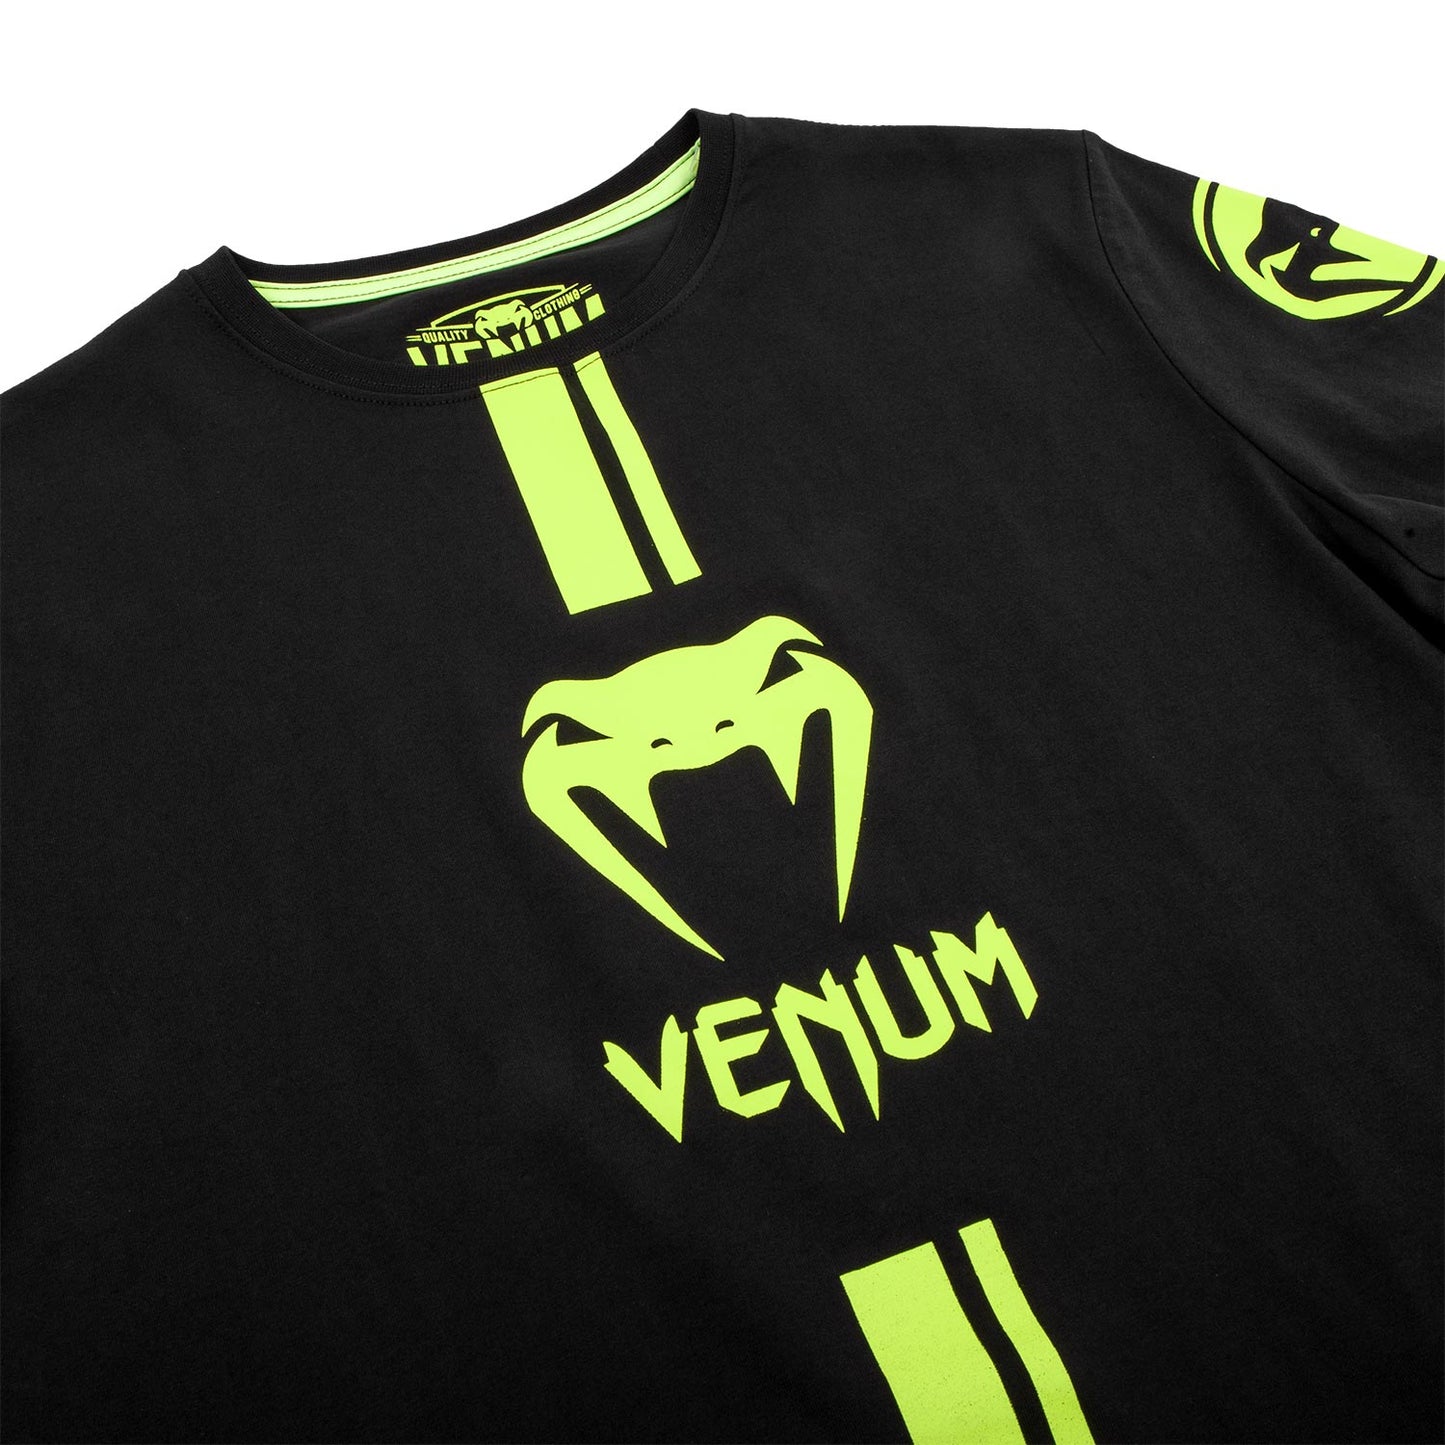 Camiseta Venum Logos - Negro/Amarillo Fluo